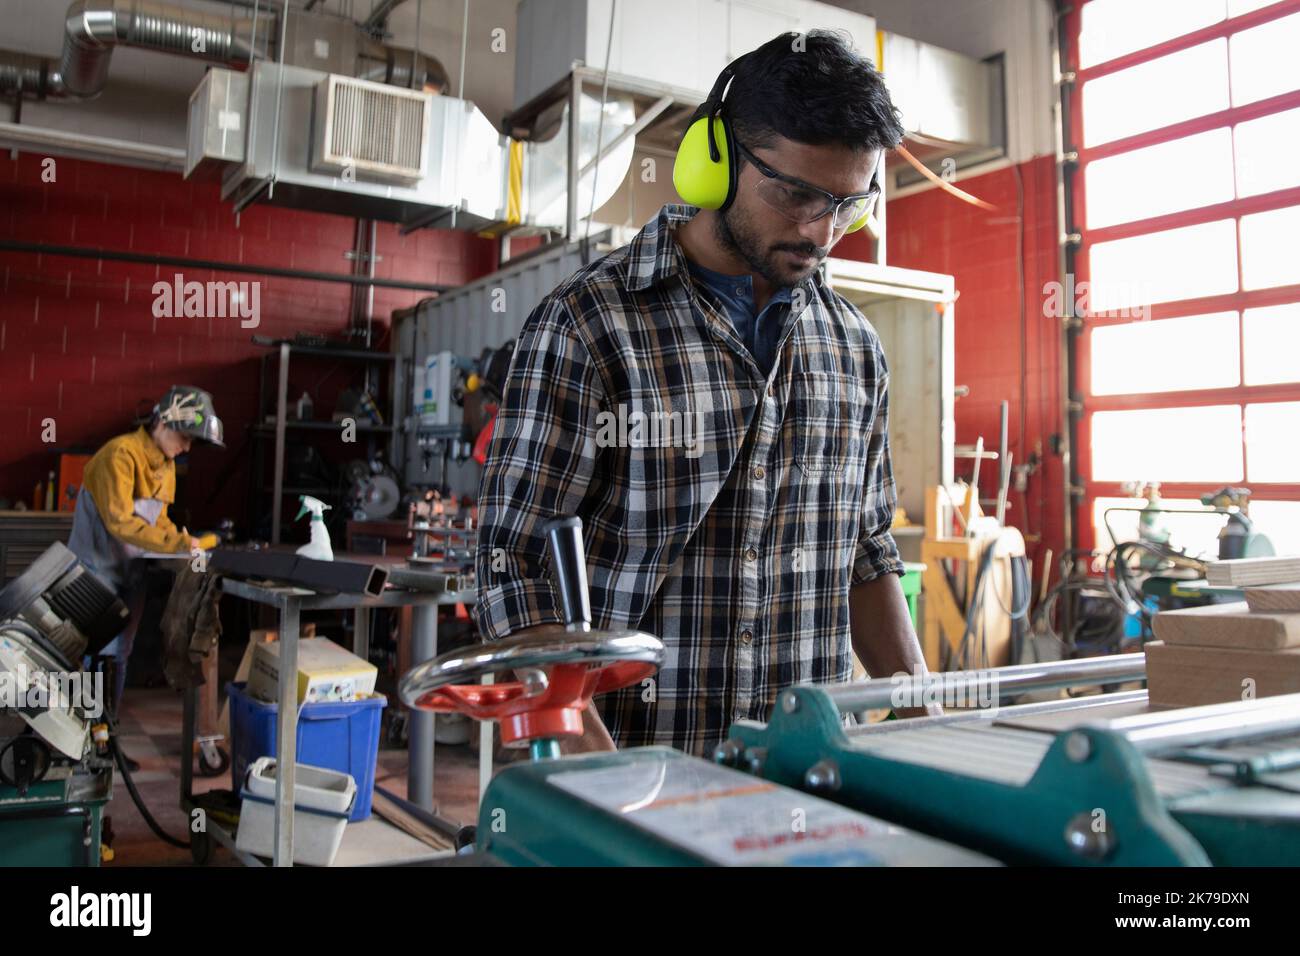 Junger Mann mit Kapselgehörschutz, der eine Maschine im Makerraum benutzt Stockfoto